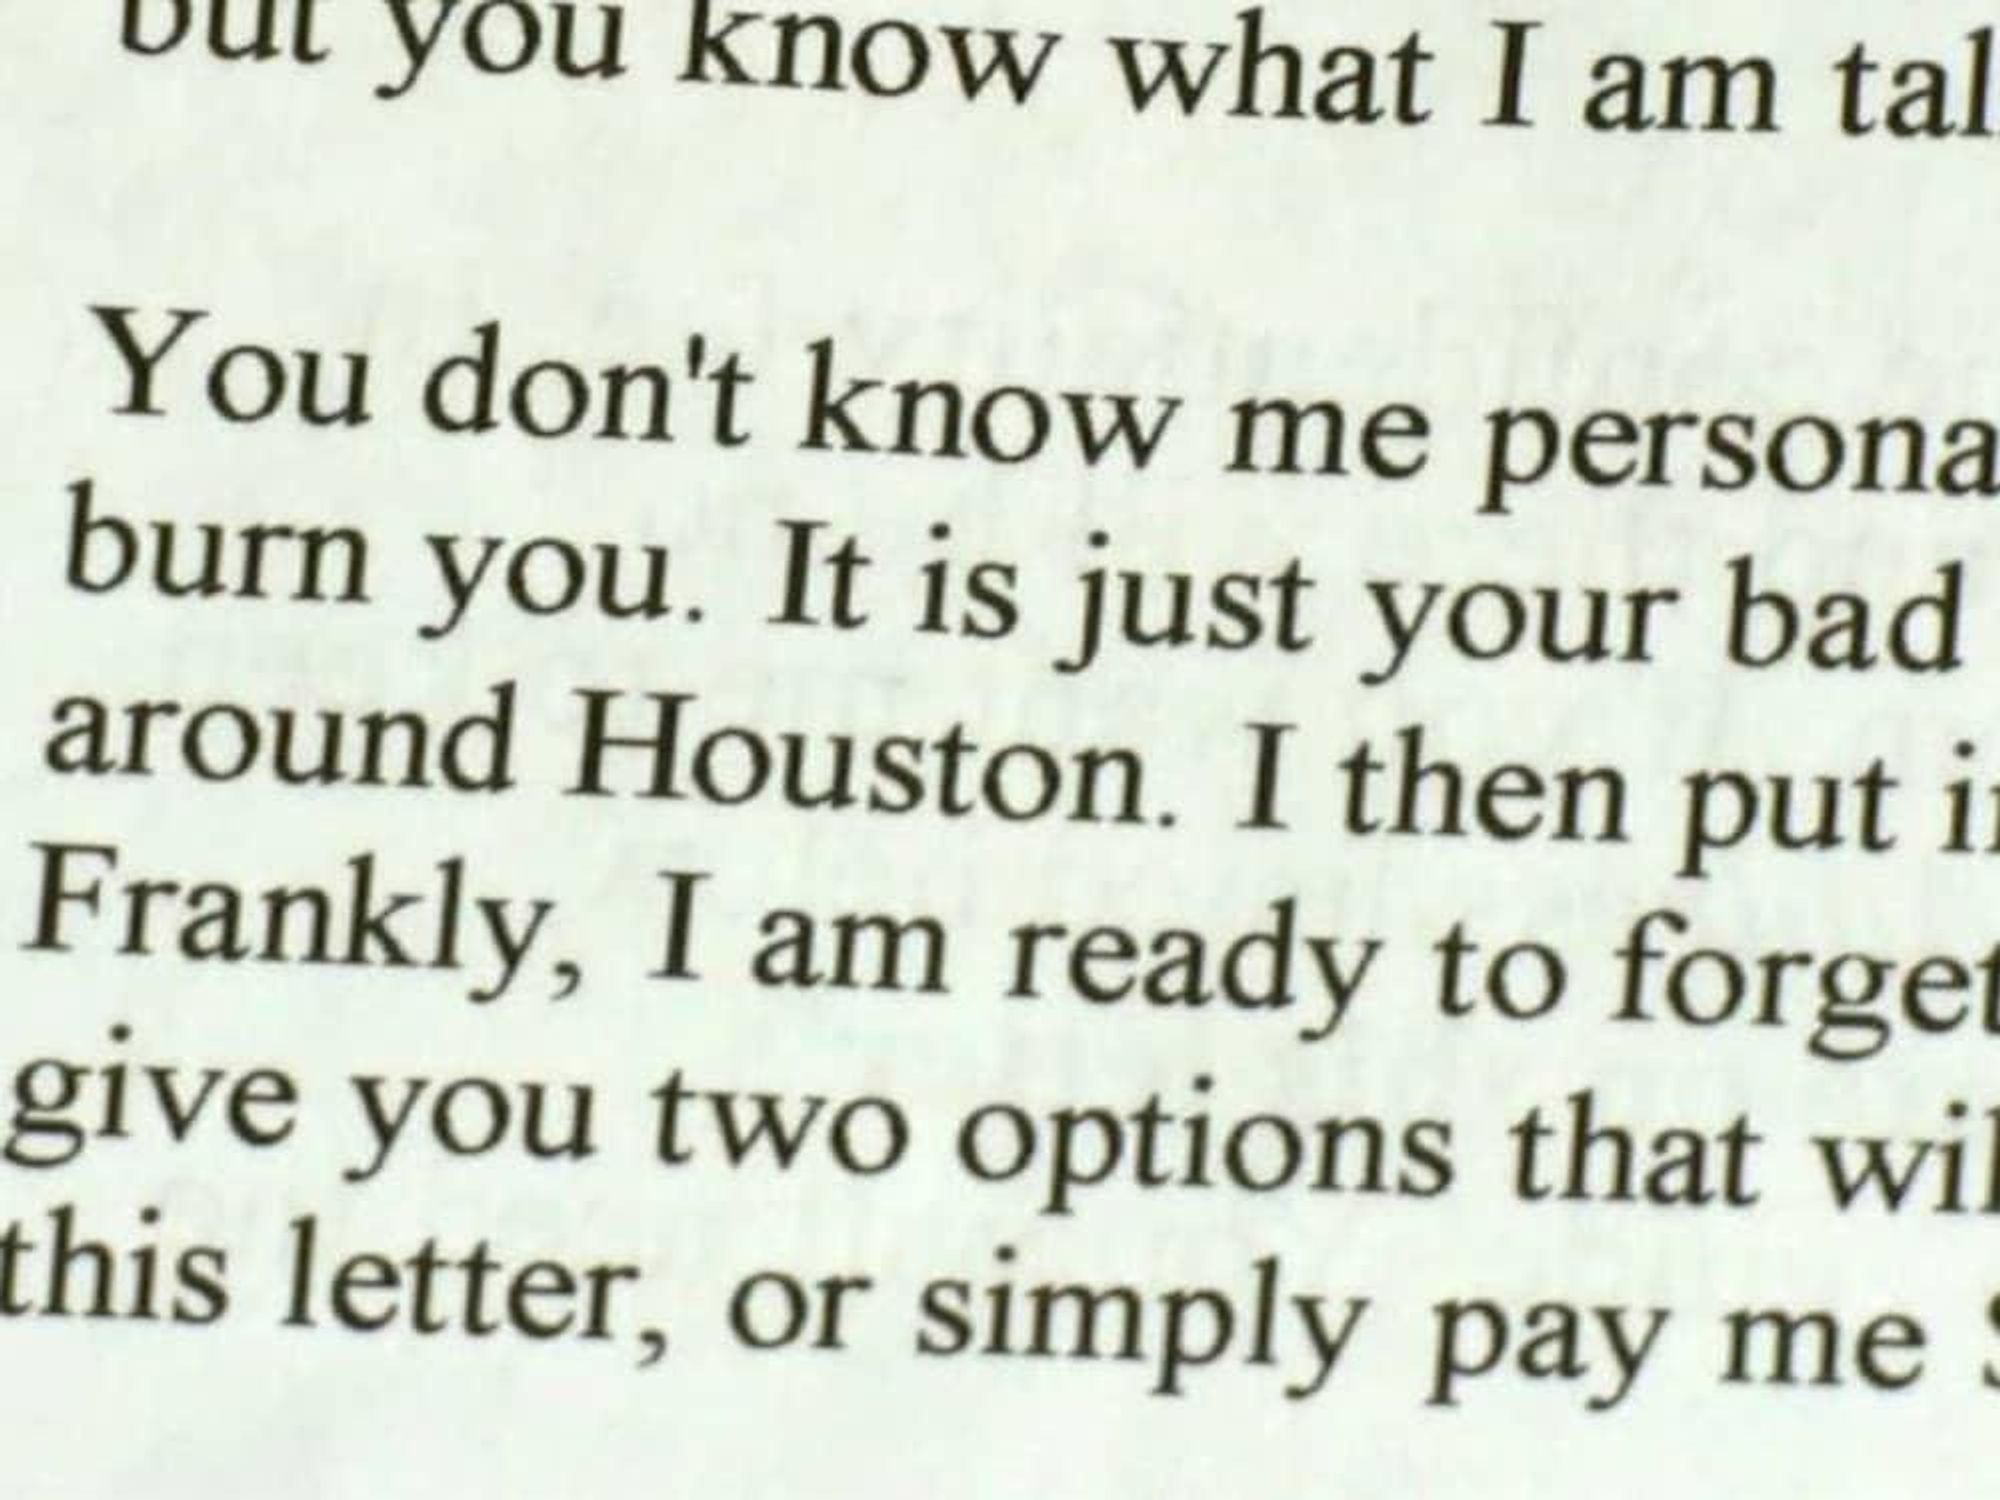 Houston scam letter alert David Audrey Gow